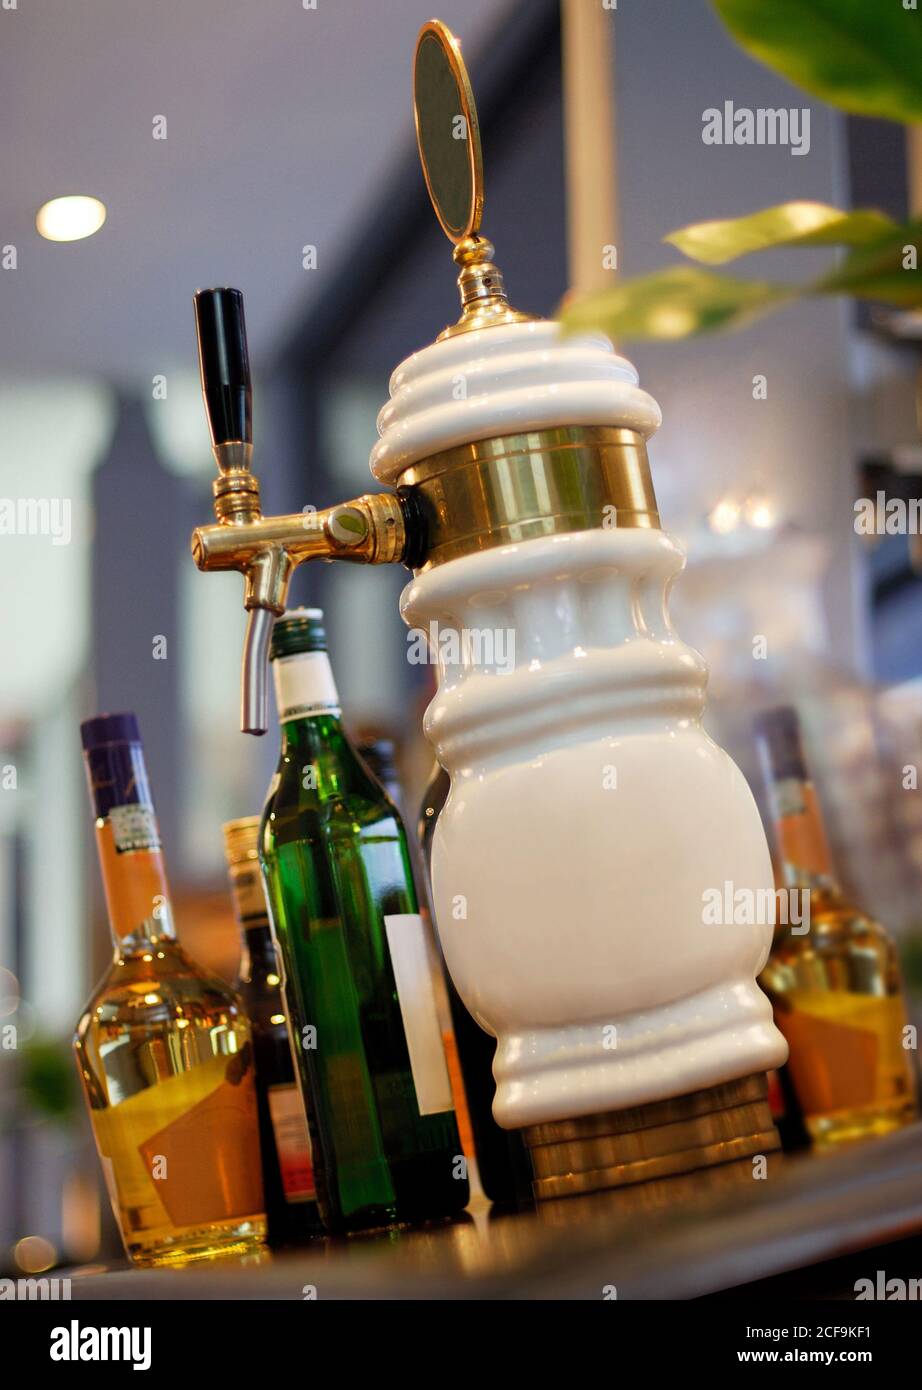 Draft beer dispenser on bar counter Stock Photo